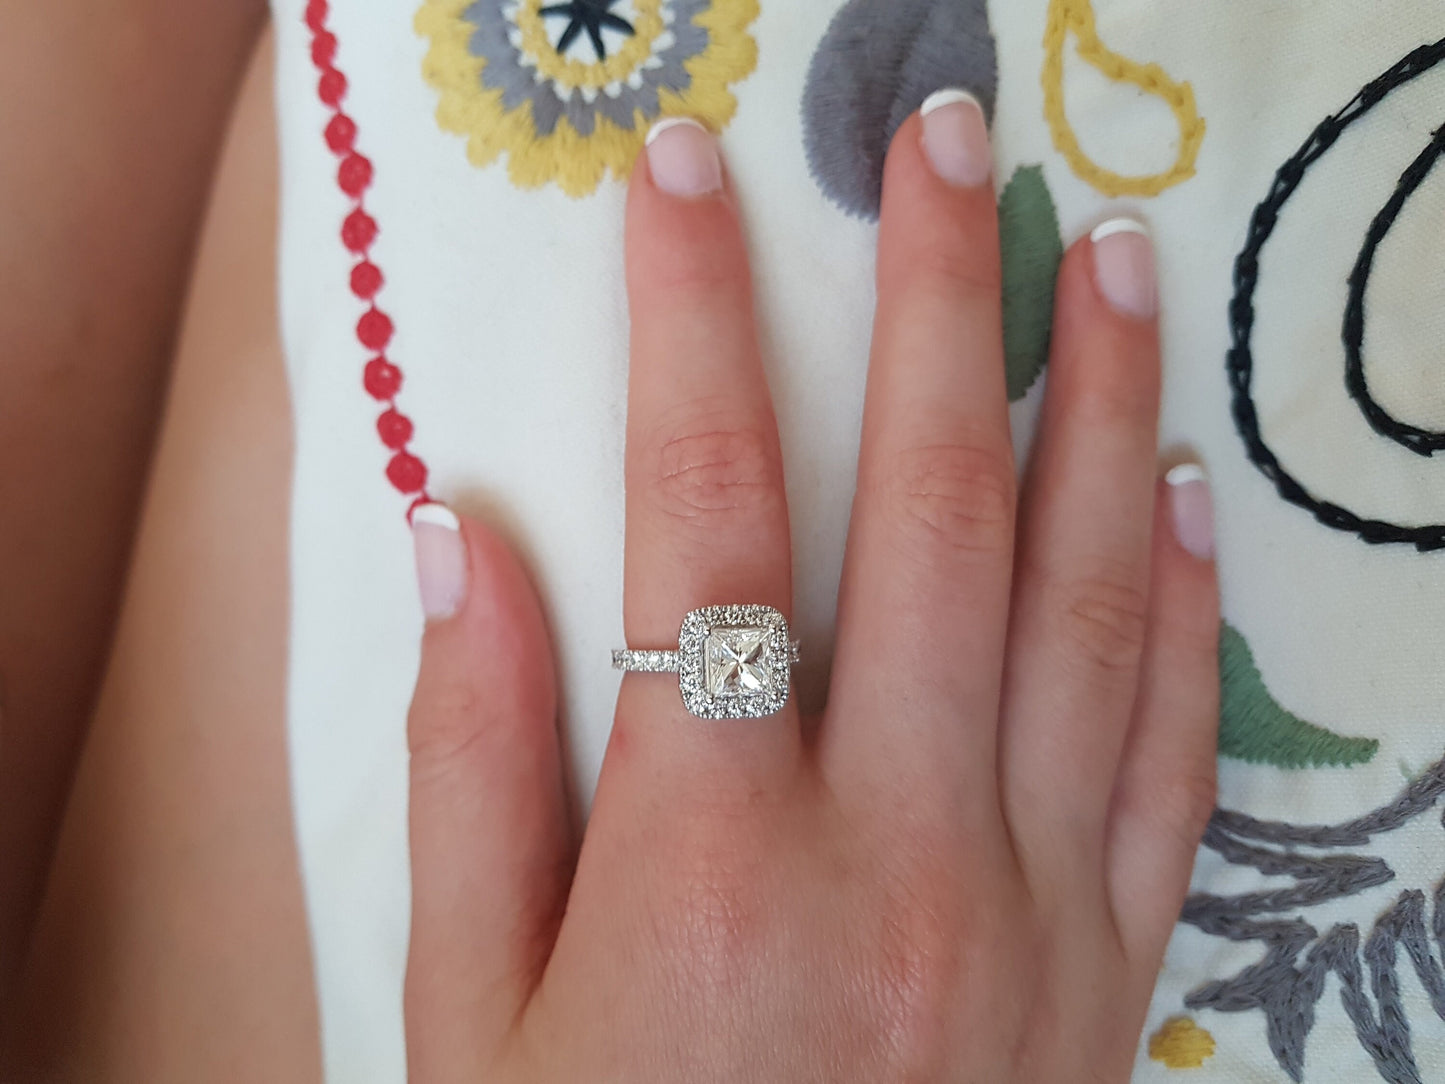 טבעת אירוסין הילה בחיתוך 2 קראט פרינסס, יהלומים טבעיים, טבעת יהלום פרינסס הילה